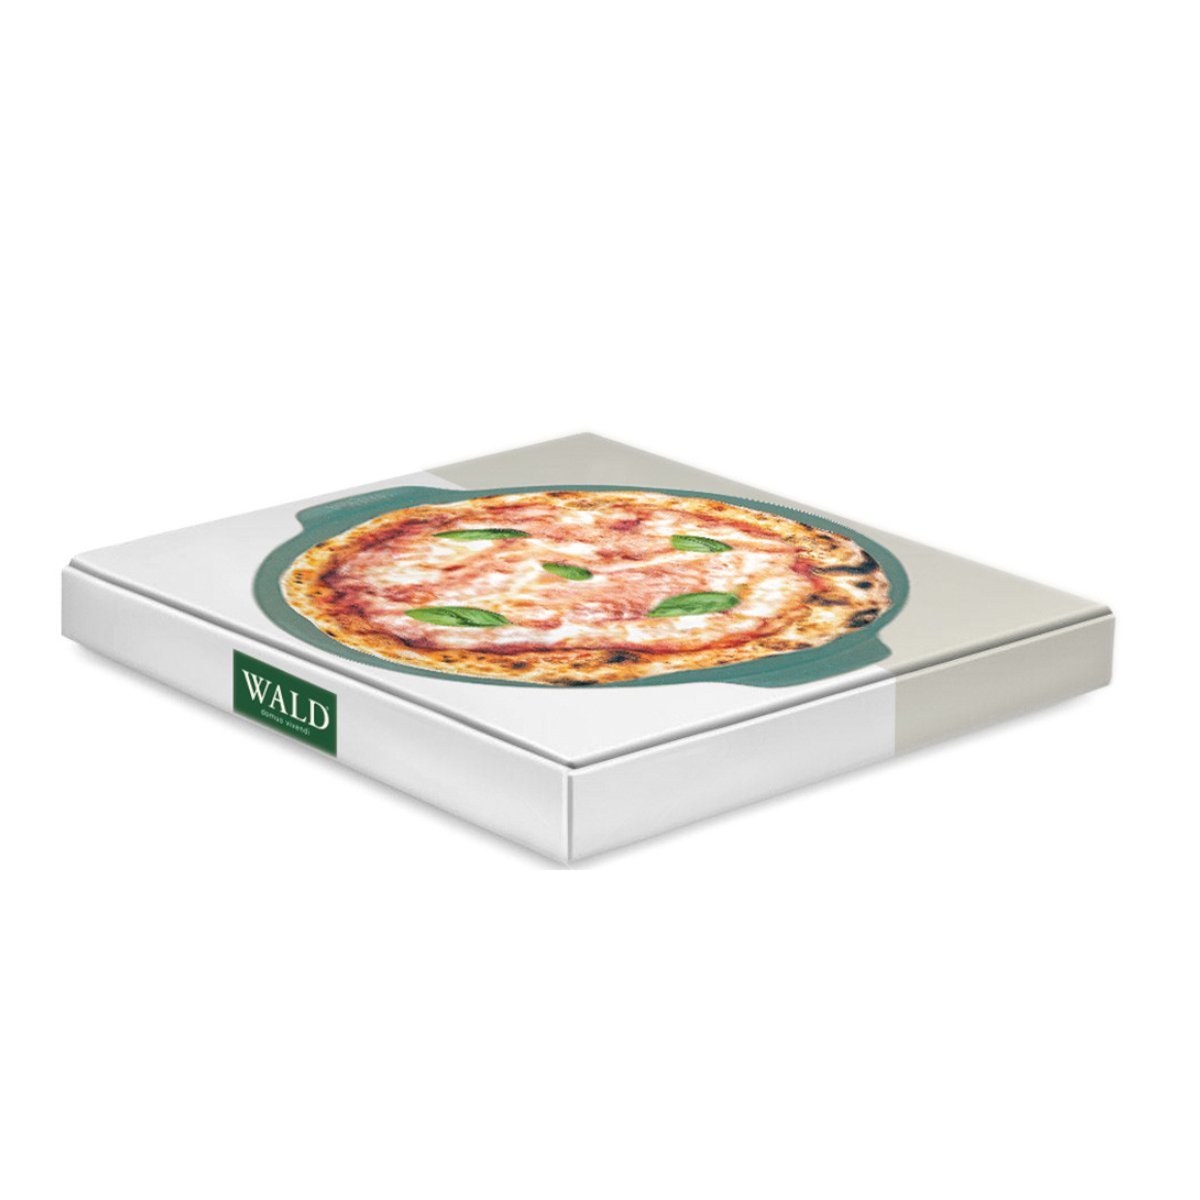 WALD Pizzastein durchgebrannt pflaumenfarben 34 dunkelgrau, Ton, Pizzaplatte glasiert cm, und